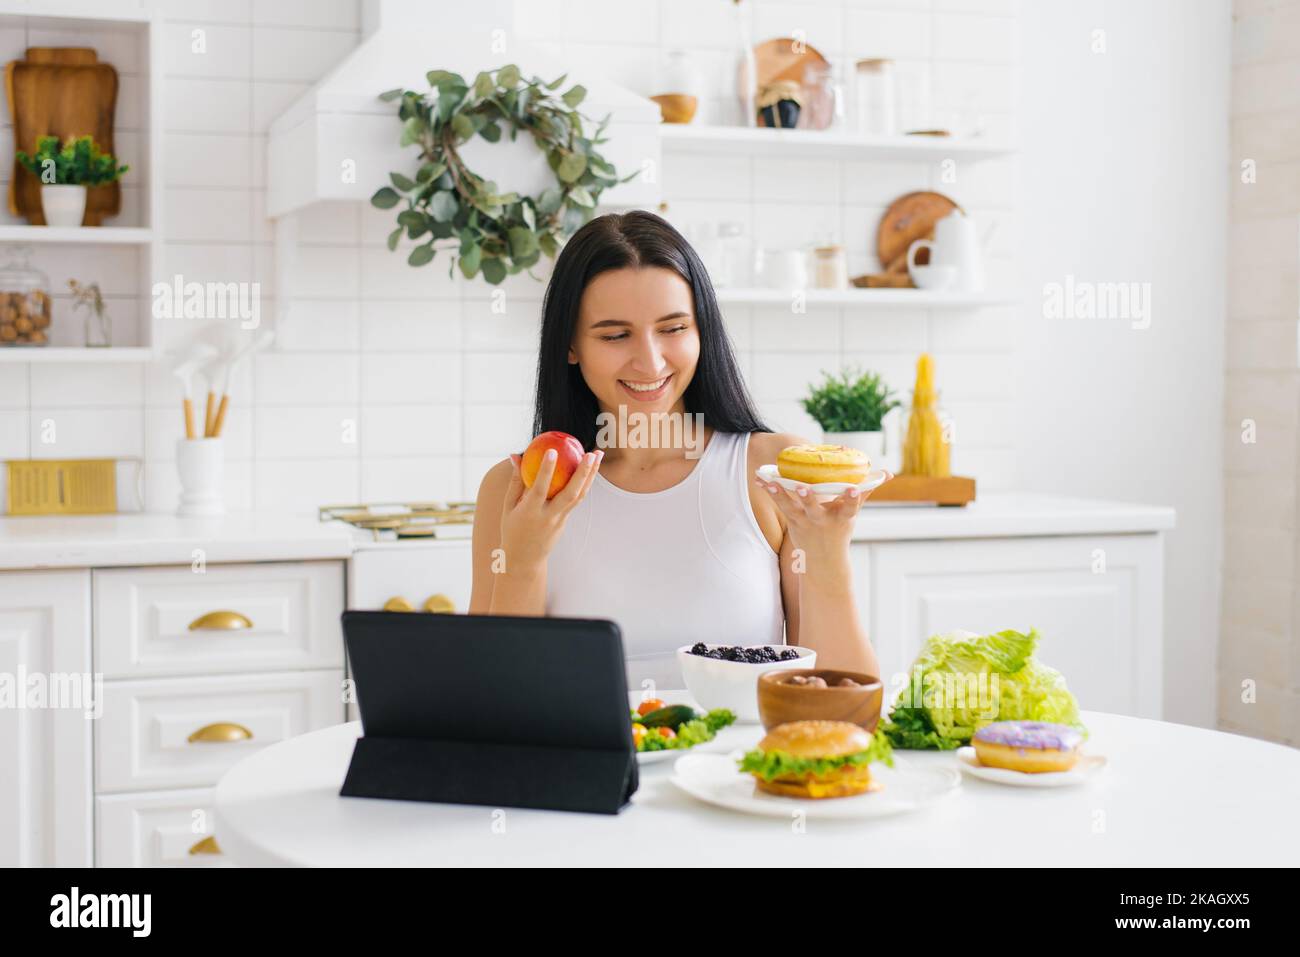 La nutricionista feliz de la mujer lleva a cabo una lección en línea o conferencia en la cocina sobre el tema de la alimentación sana y de la pérdida del peso Foto de stock